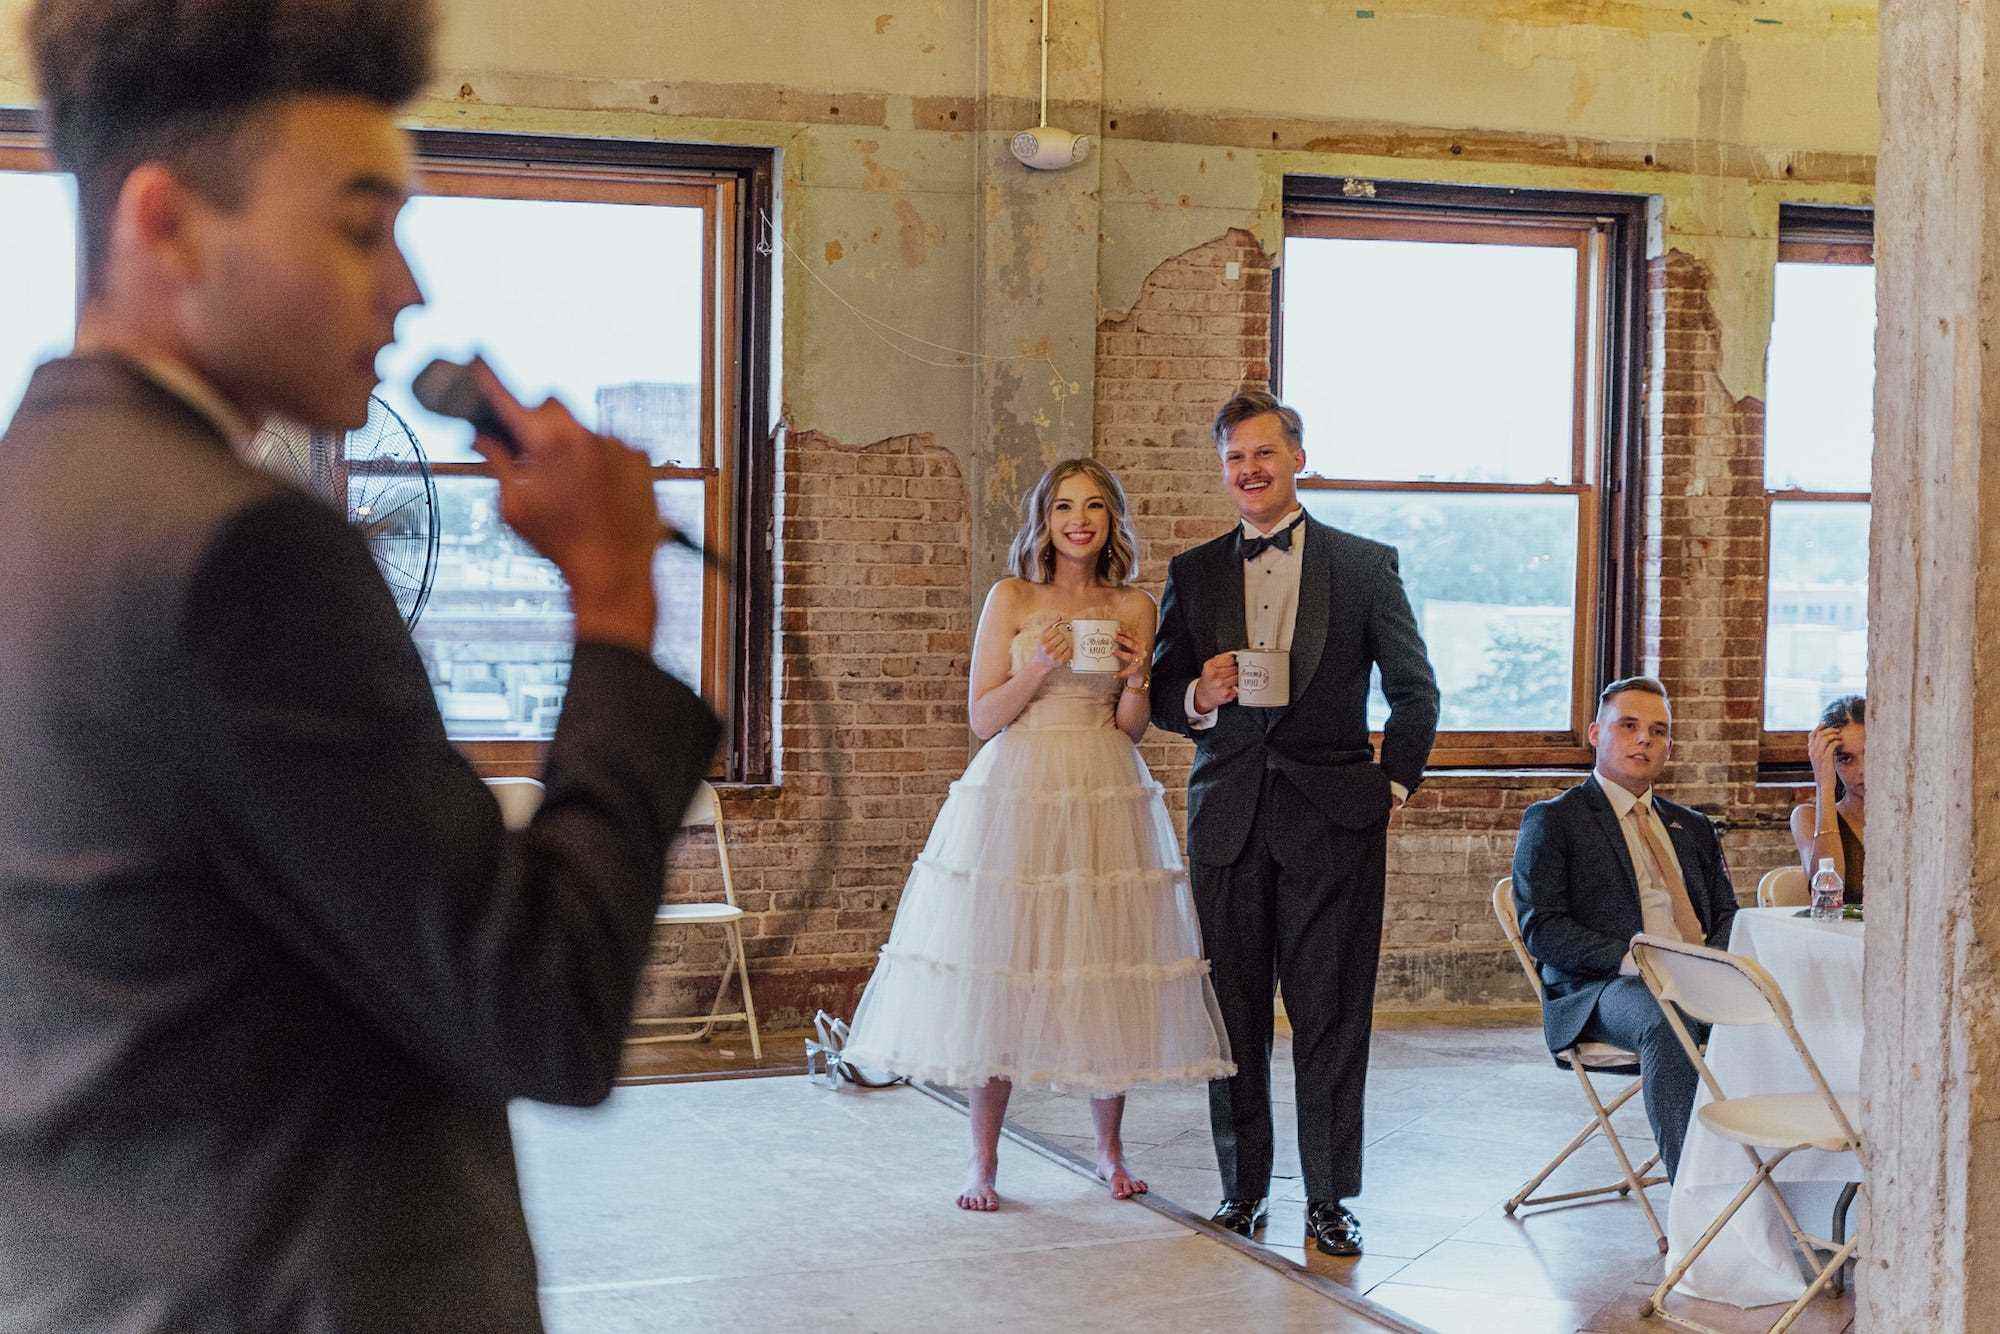 Eine Braut und ein Bräutigam sehen zu, wie jemand bei ihrem Hochzeitsempfang anstößt.